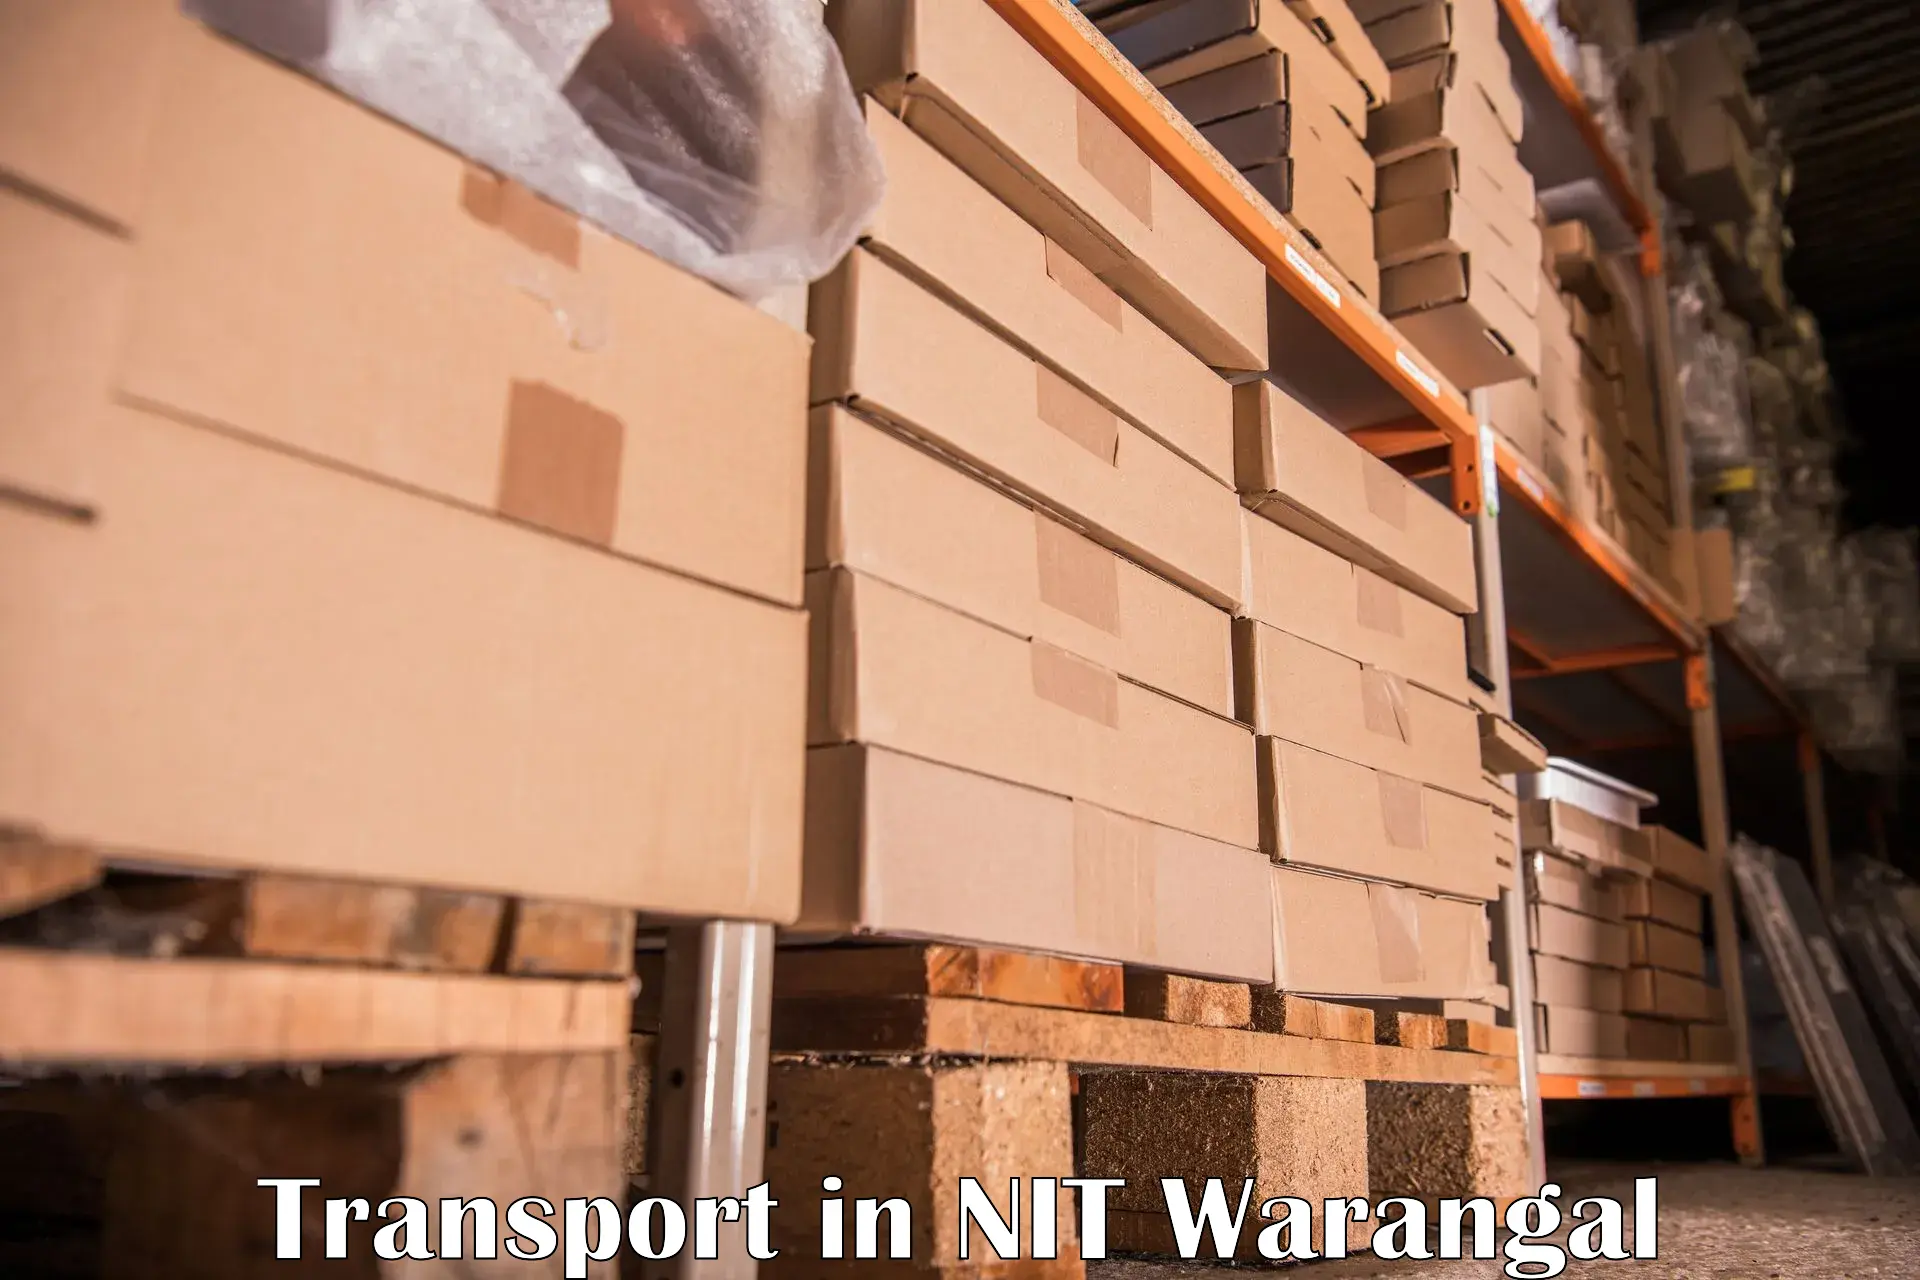 Intercity transport in NIT Warangal